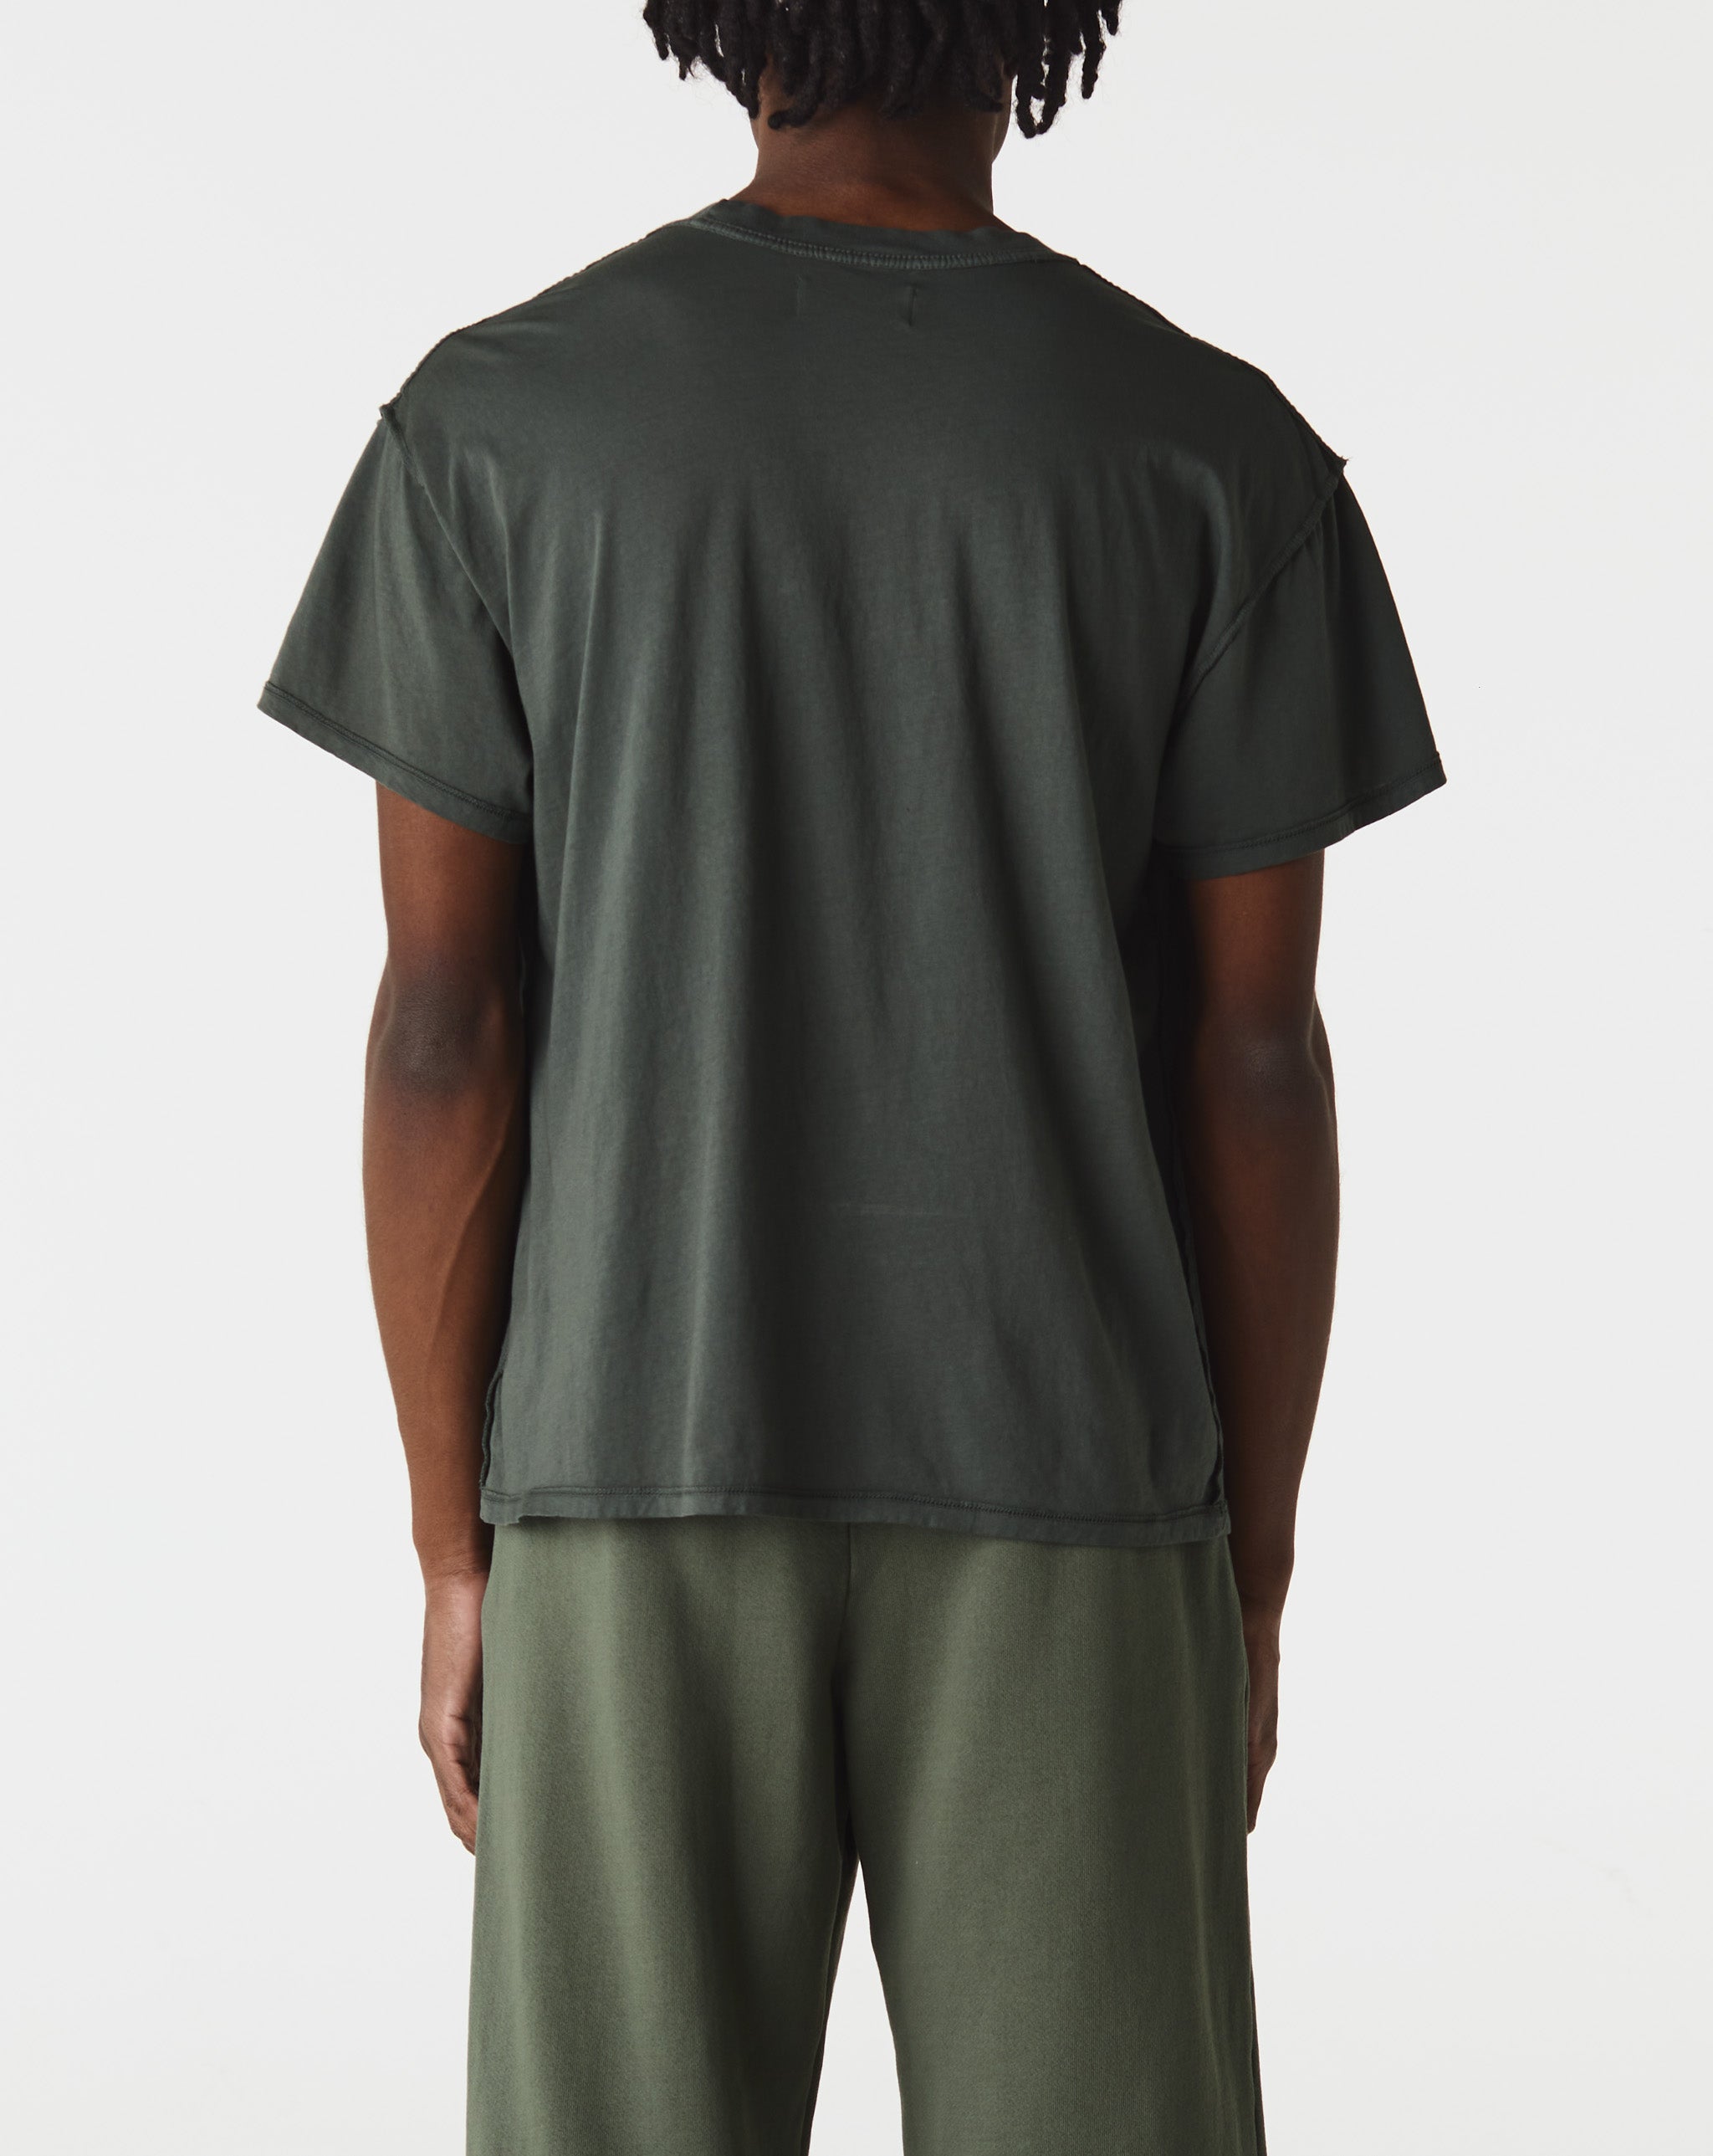 Les Tien Inside Out T-Shirt  - Cheap Atelier-lumieres Jordan outlet